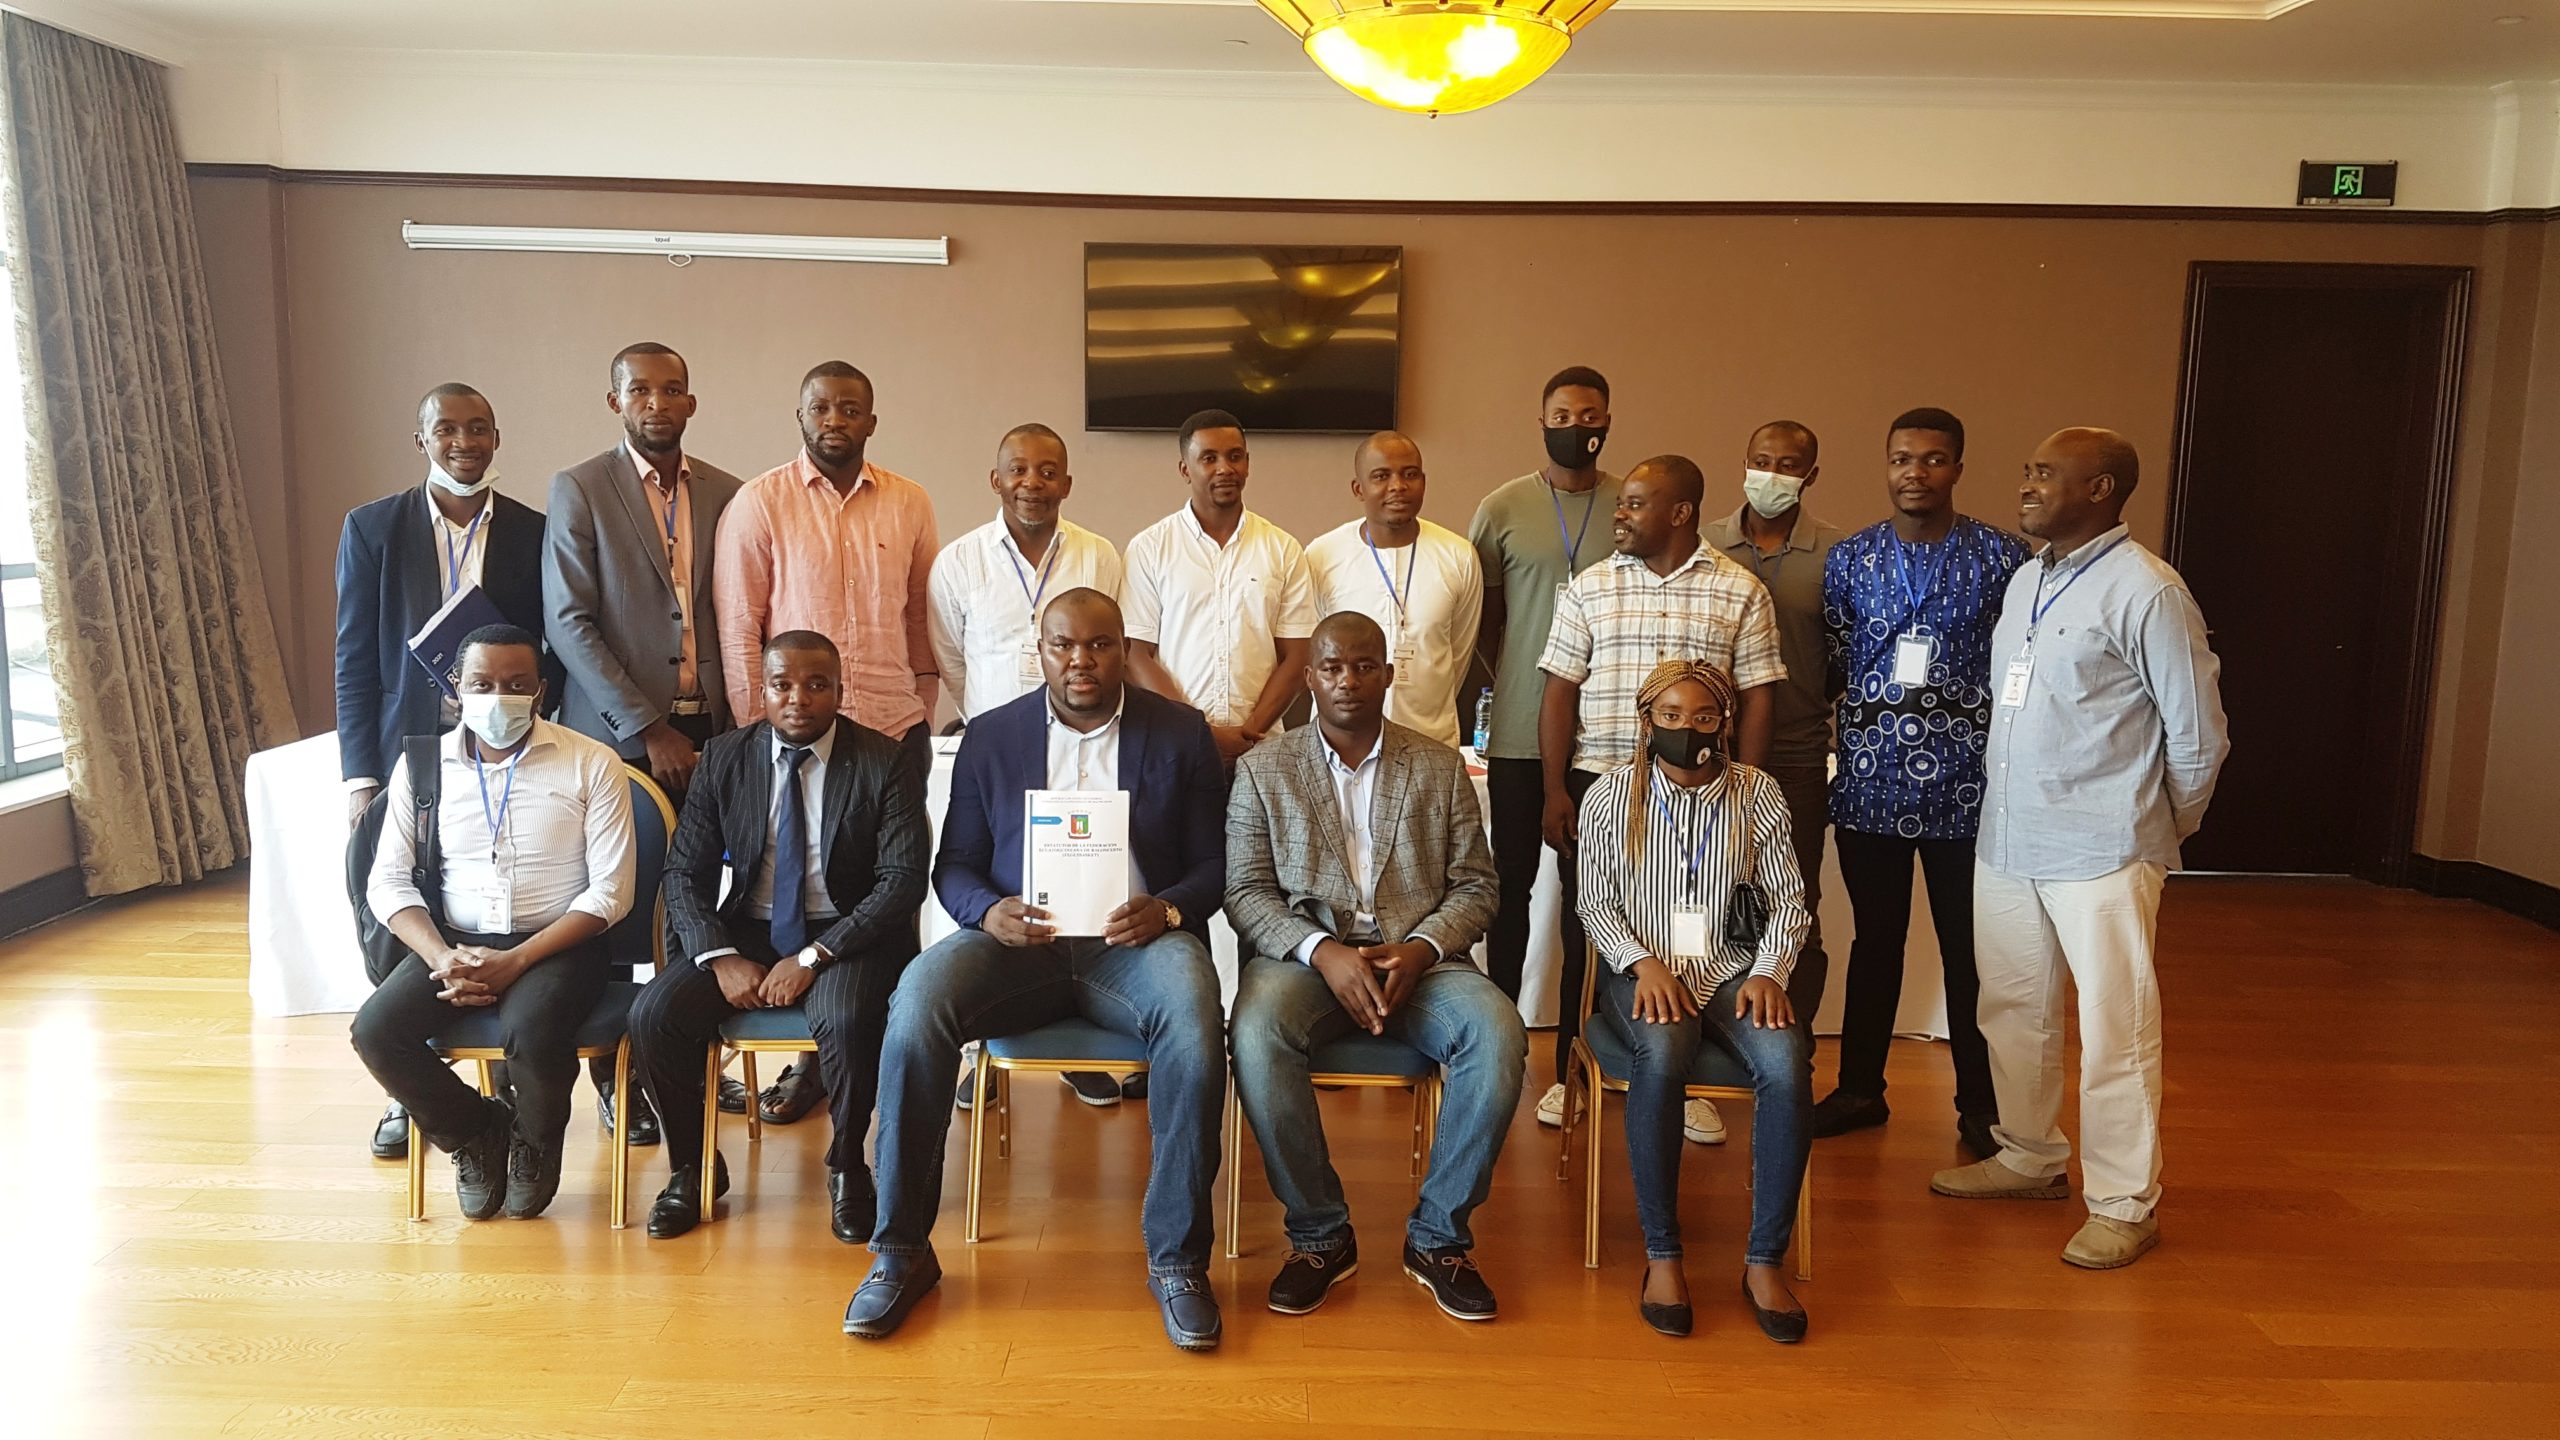 Se aprueban los estatutos de la Federación Ecuatoguineana de Baloncesto